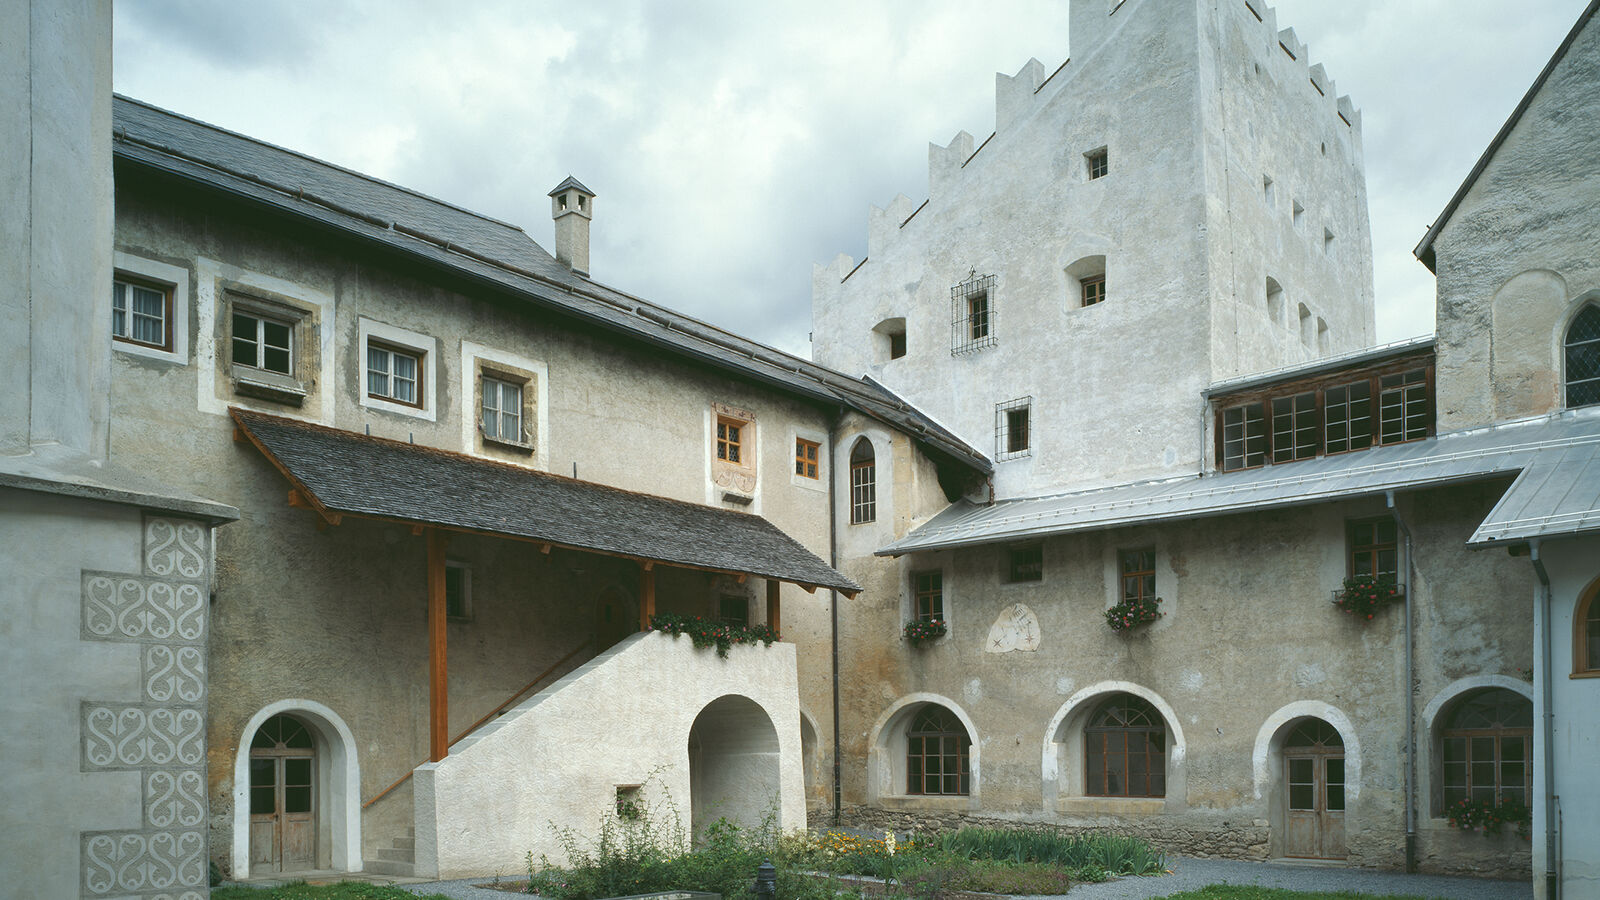 Müstair Monastery Museum, 10th century tower Planta